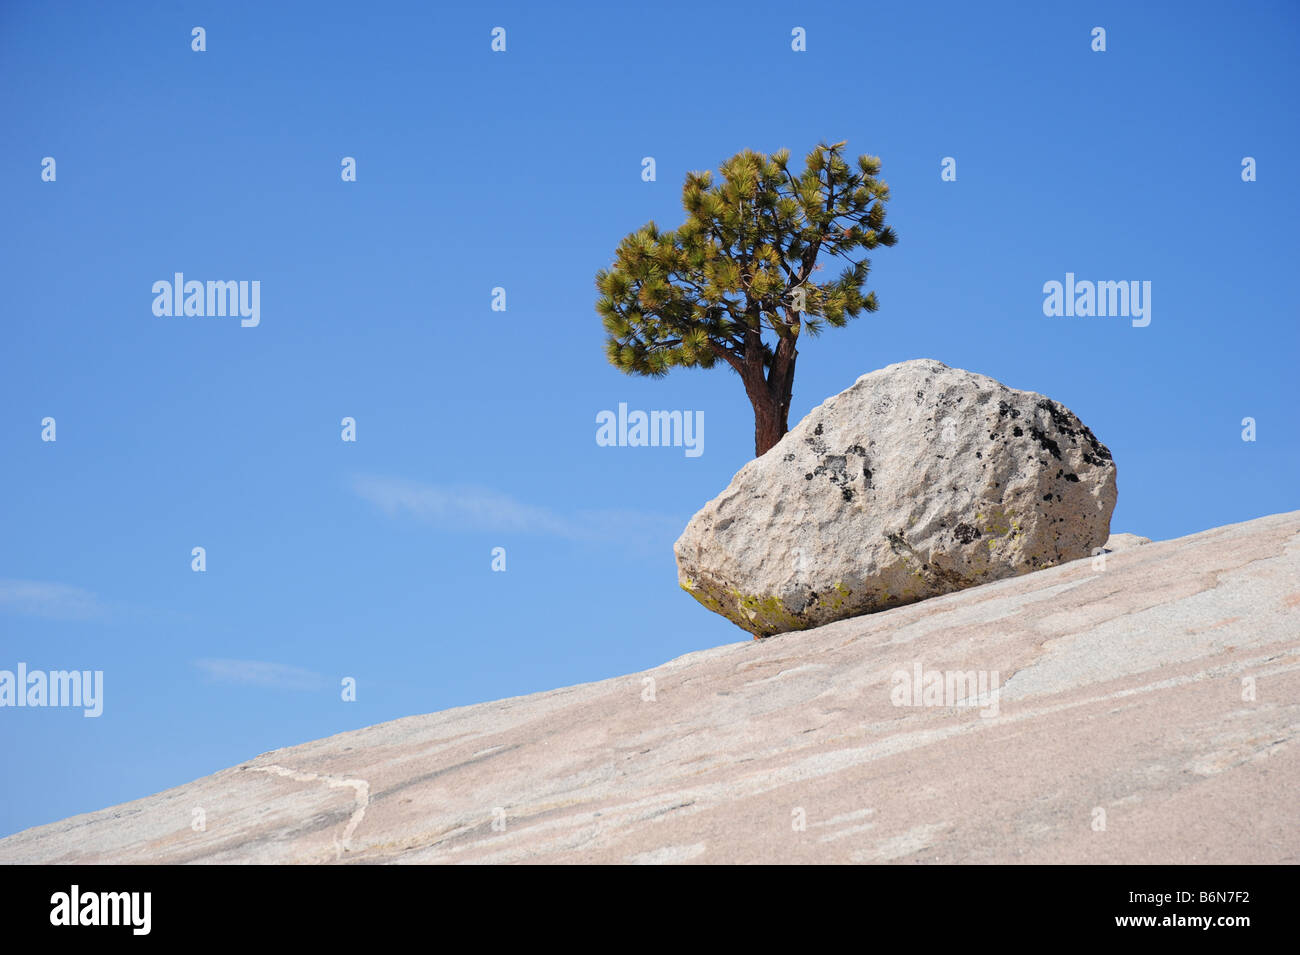 Un arbre solitaire sur une pente rocheuse Banque D'Images